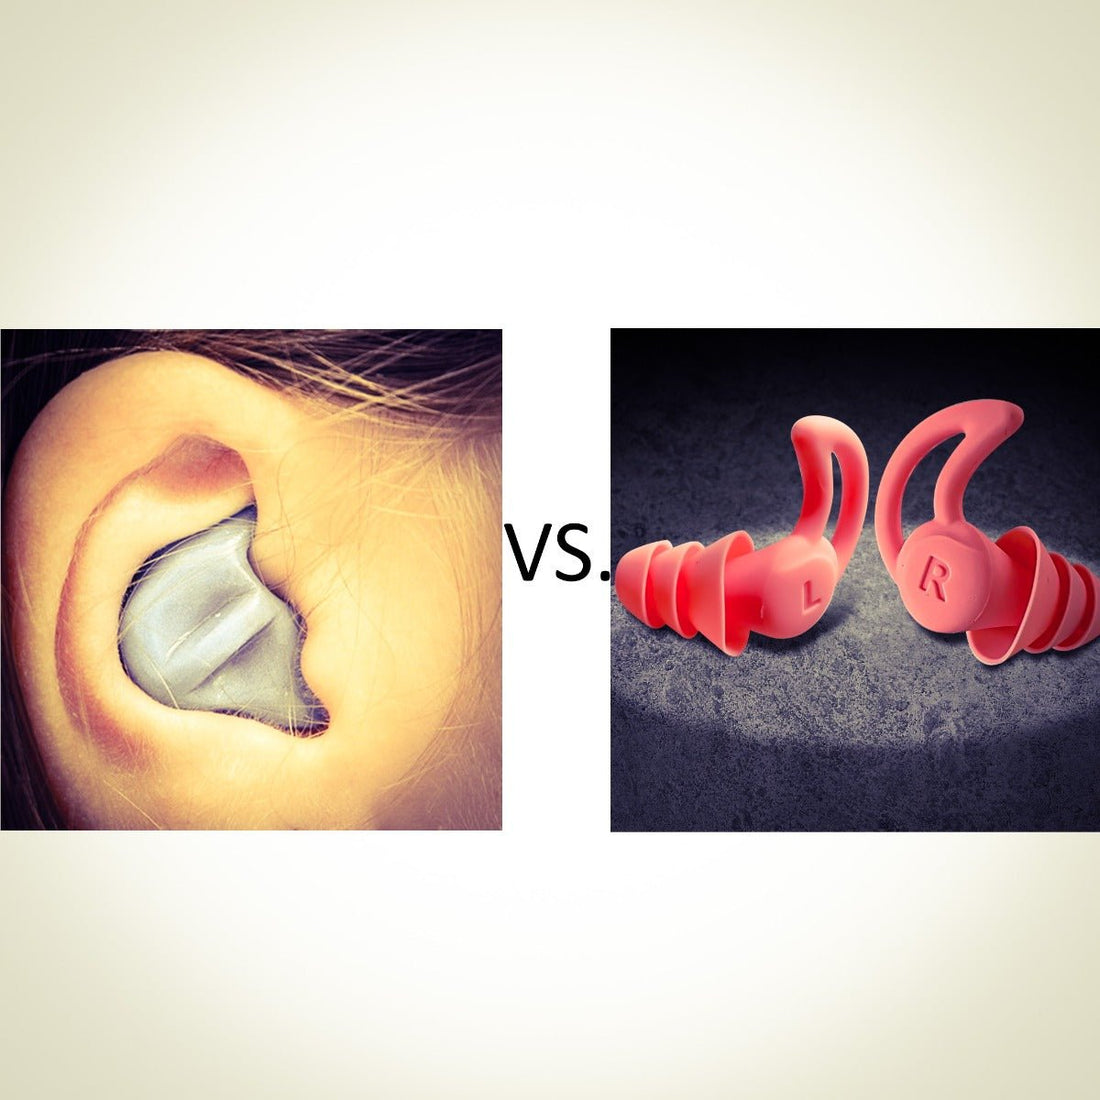 Angepasster Gehörschutz: Funktioniert die Kommunikation in Lärmbereichen?